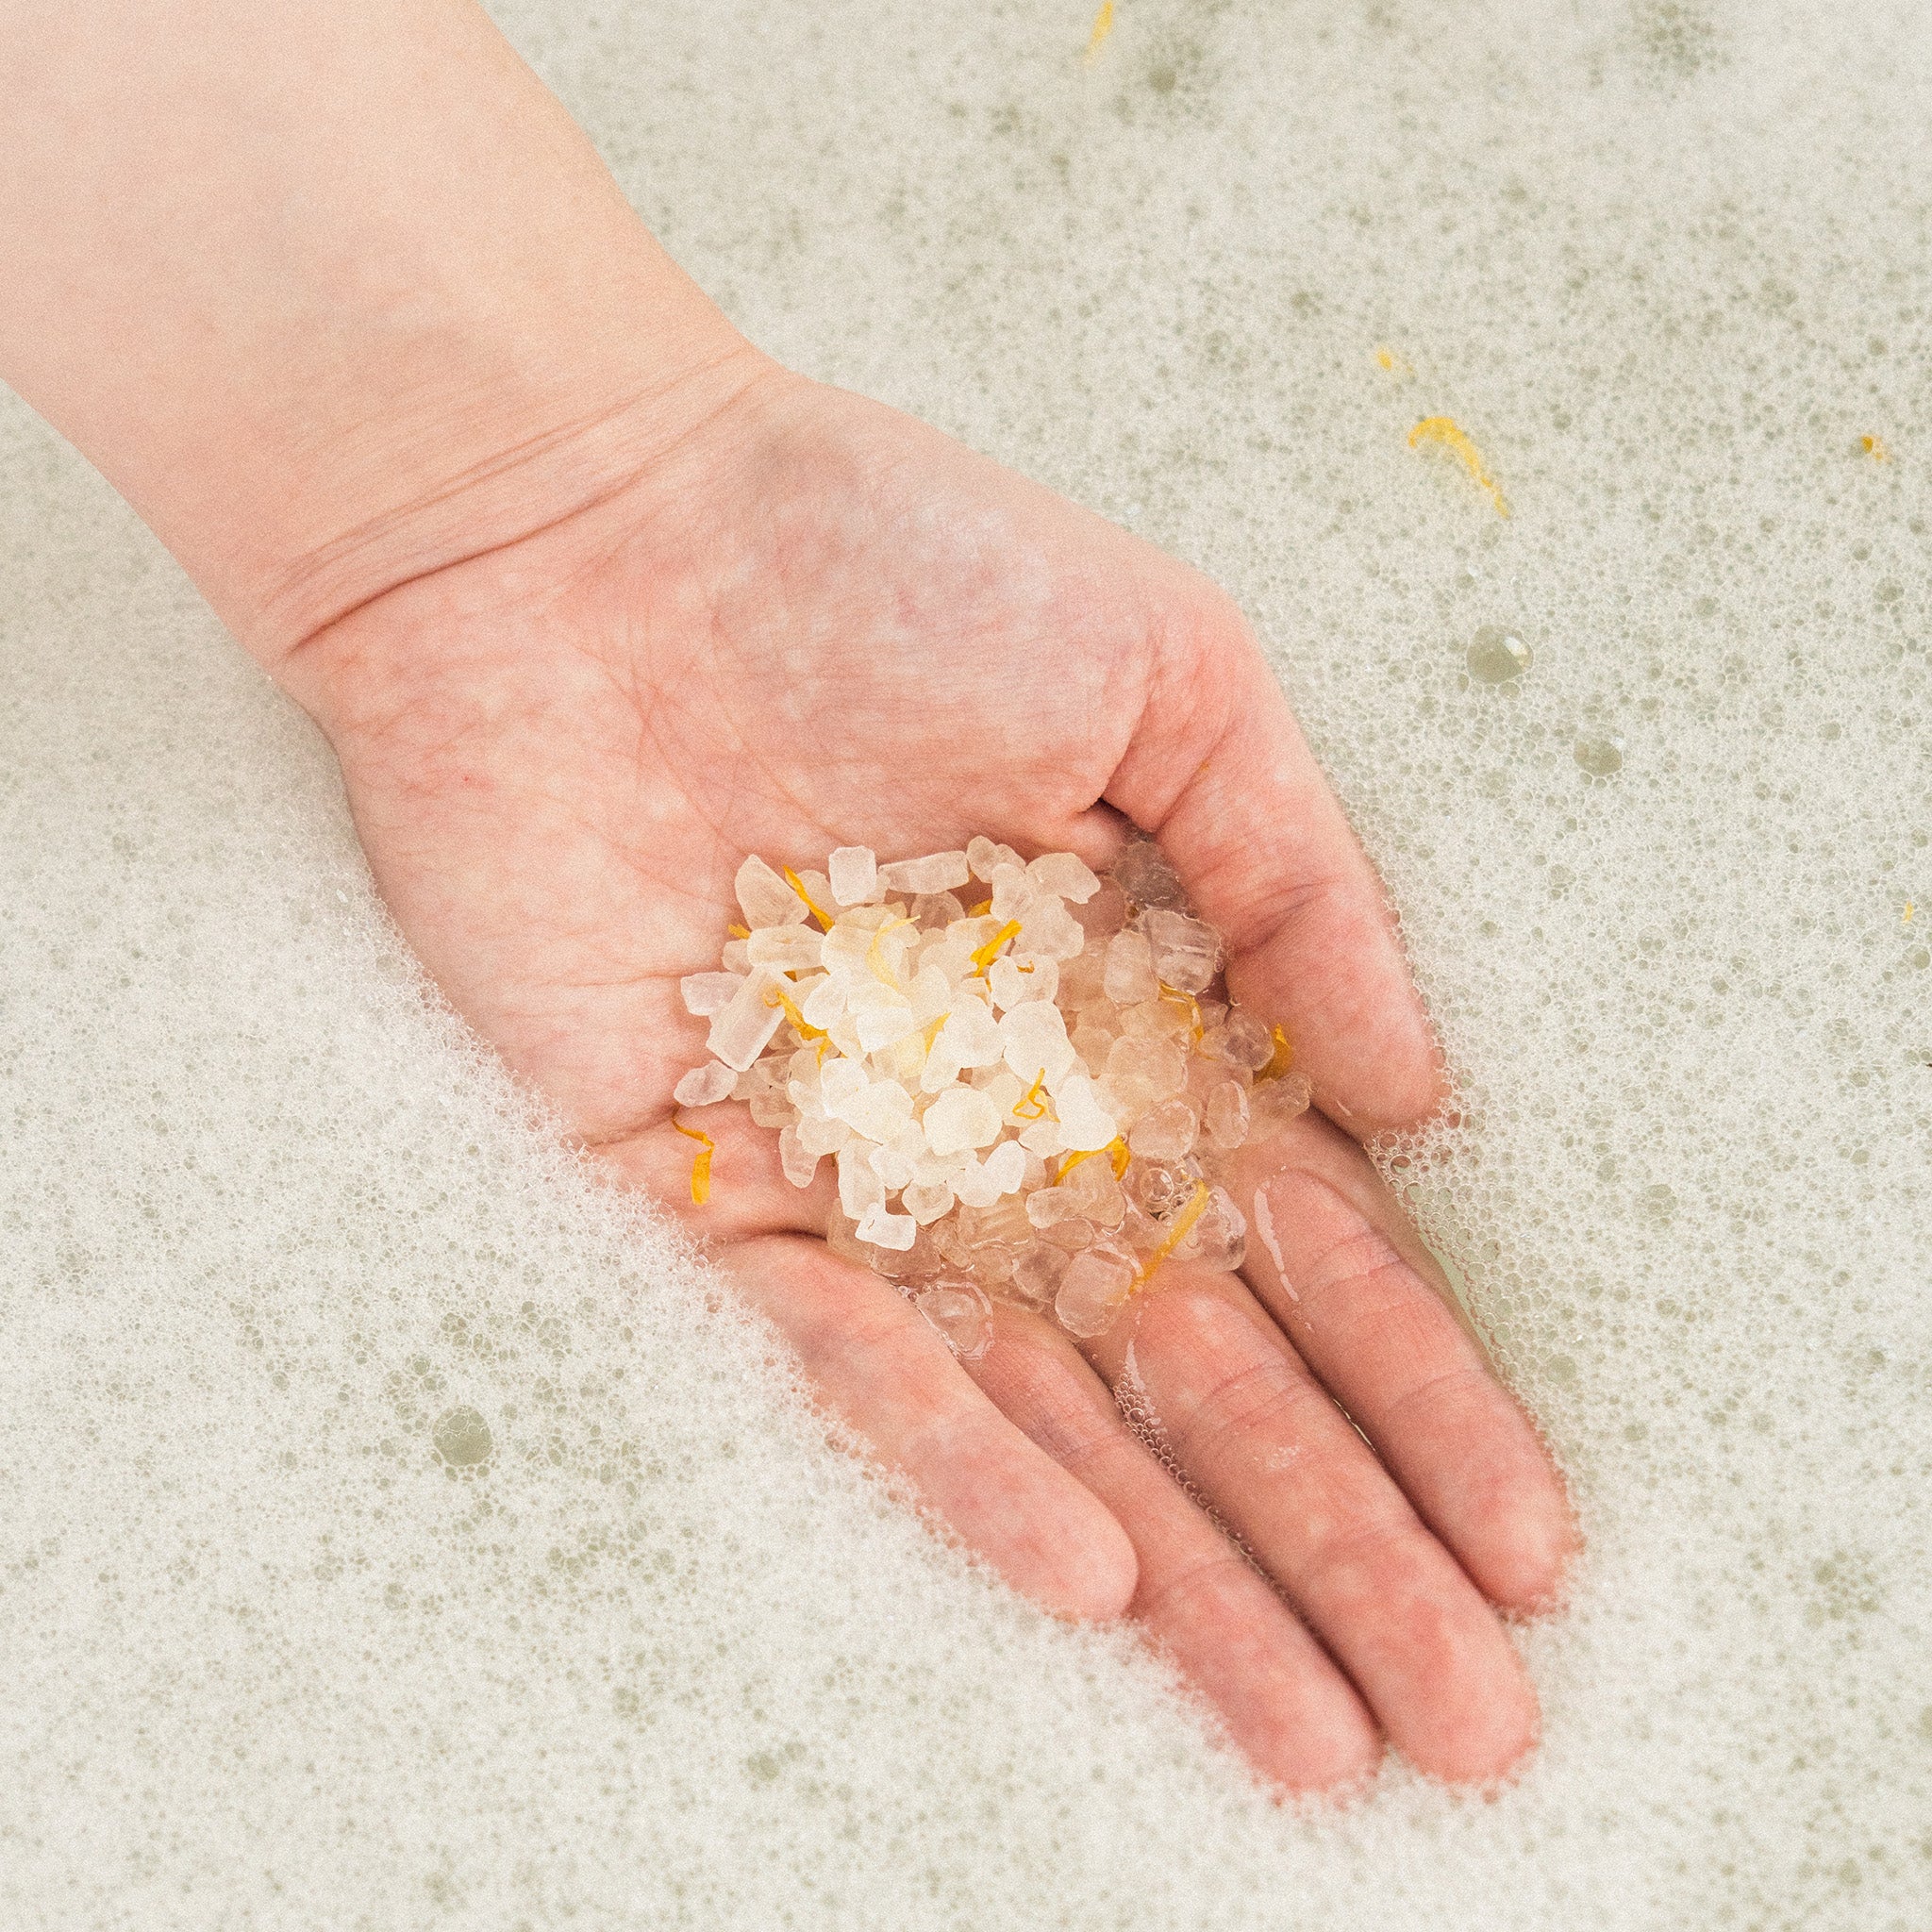 Dłoń trzymająca przezroczyste kryształki soli do kąpieli z dodatkiem złotych płatków, na tle białej, pienistej wody.